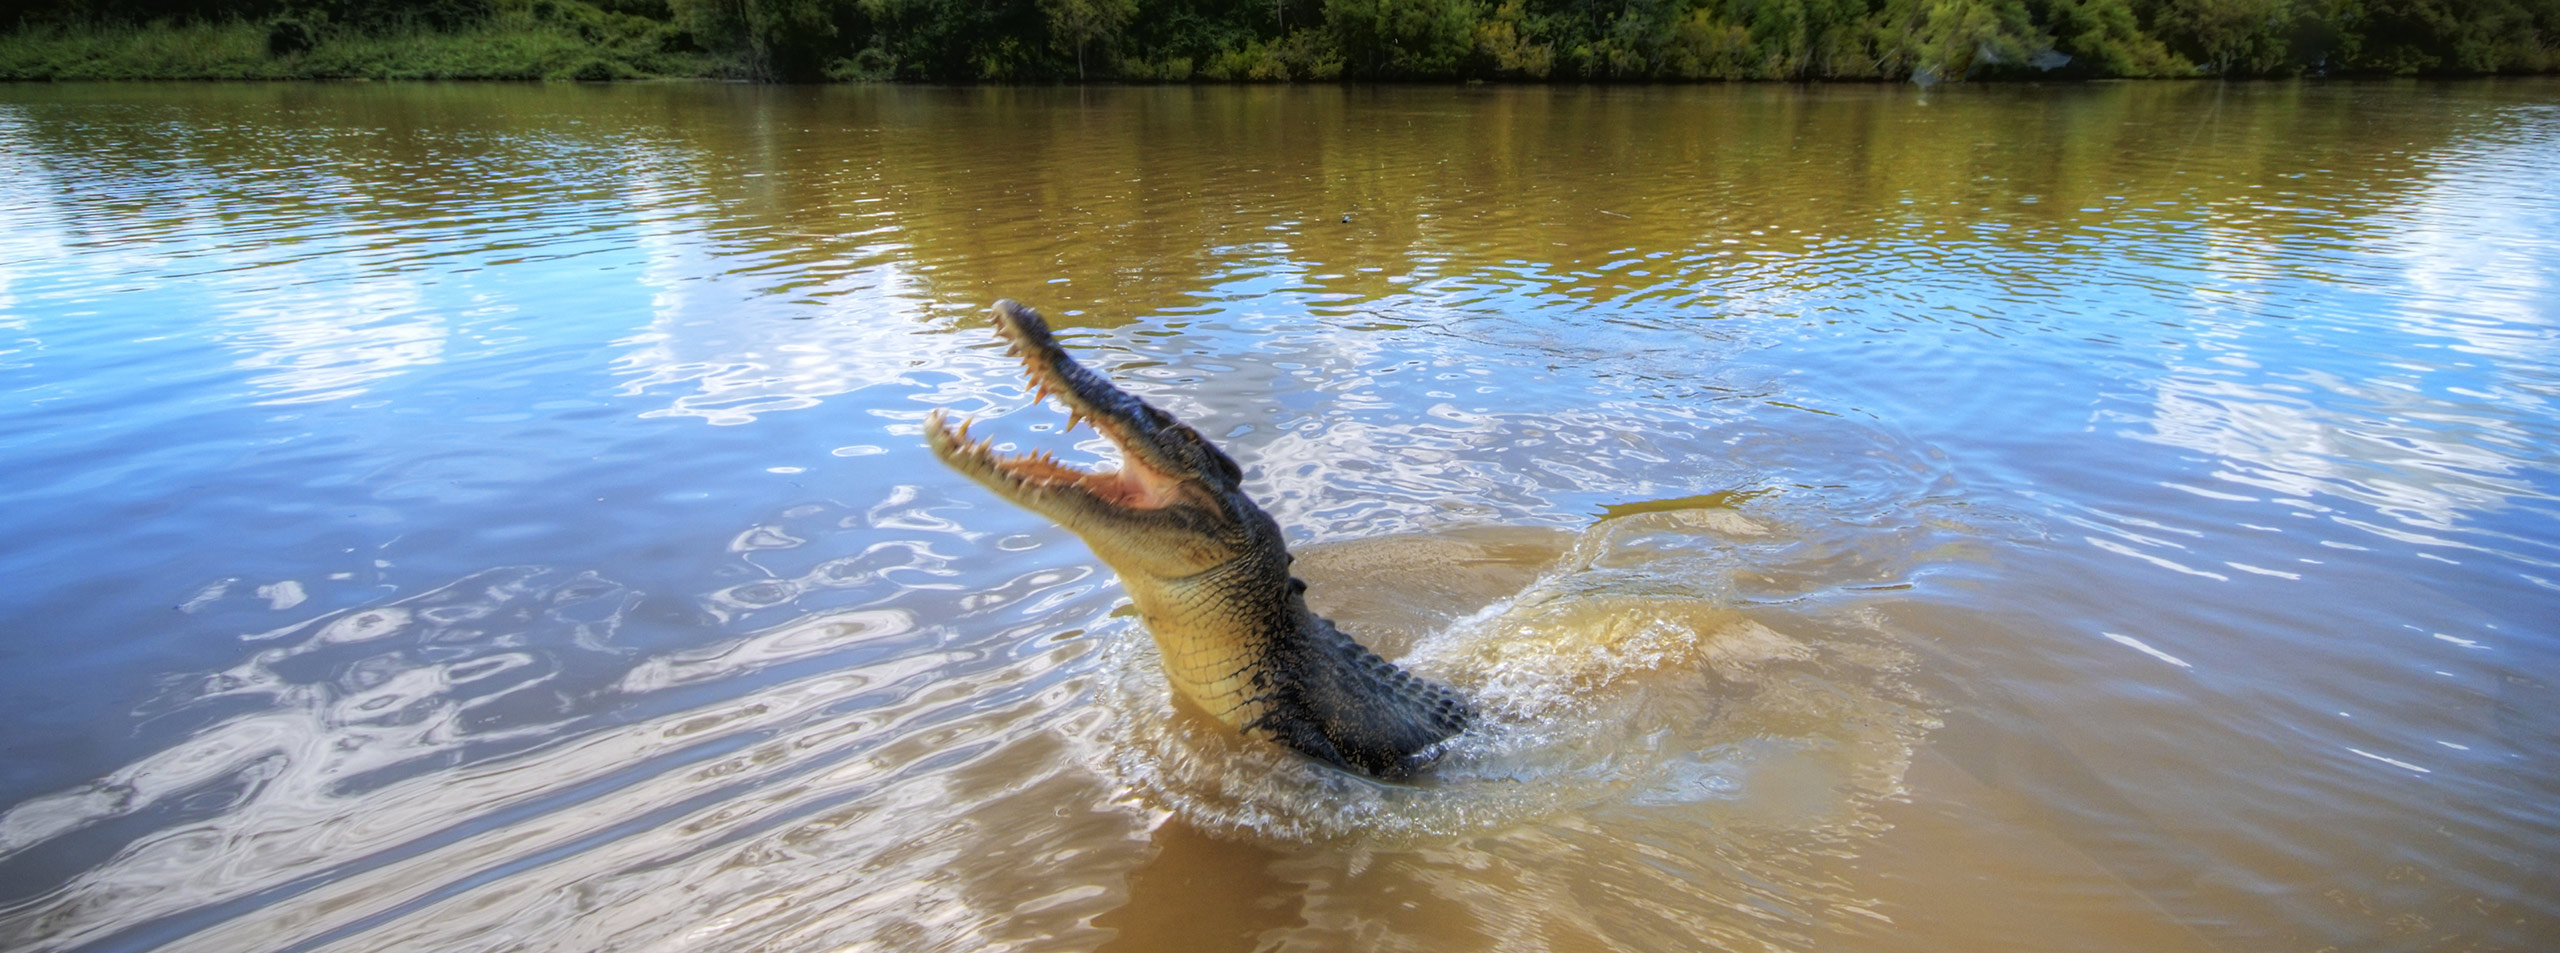 Jumping Crocs at Adelaide River